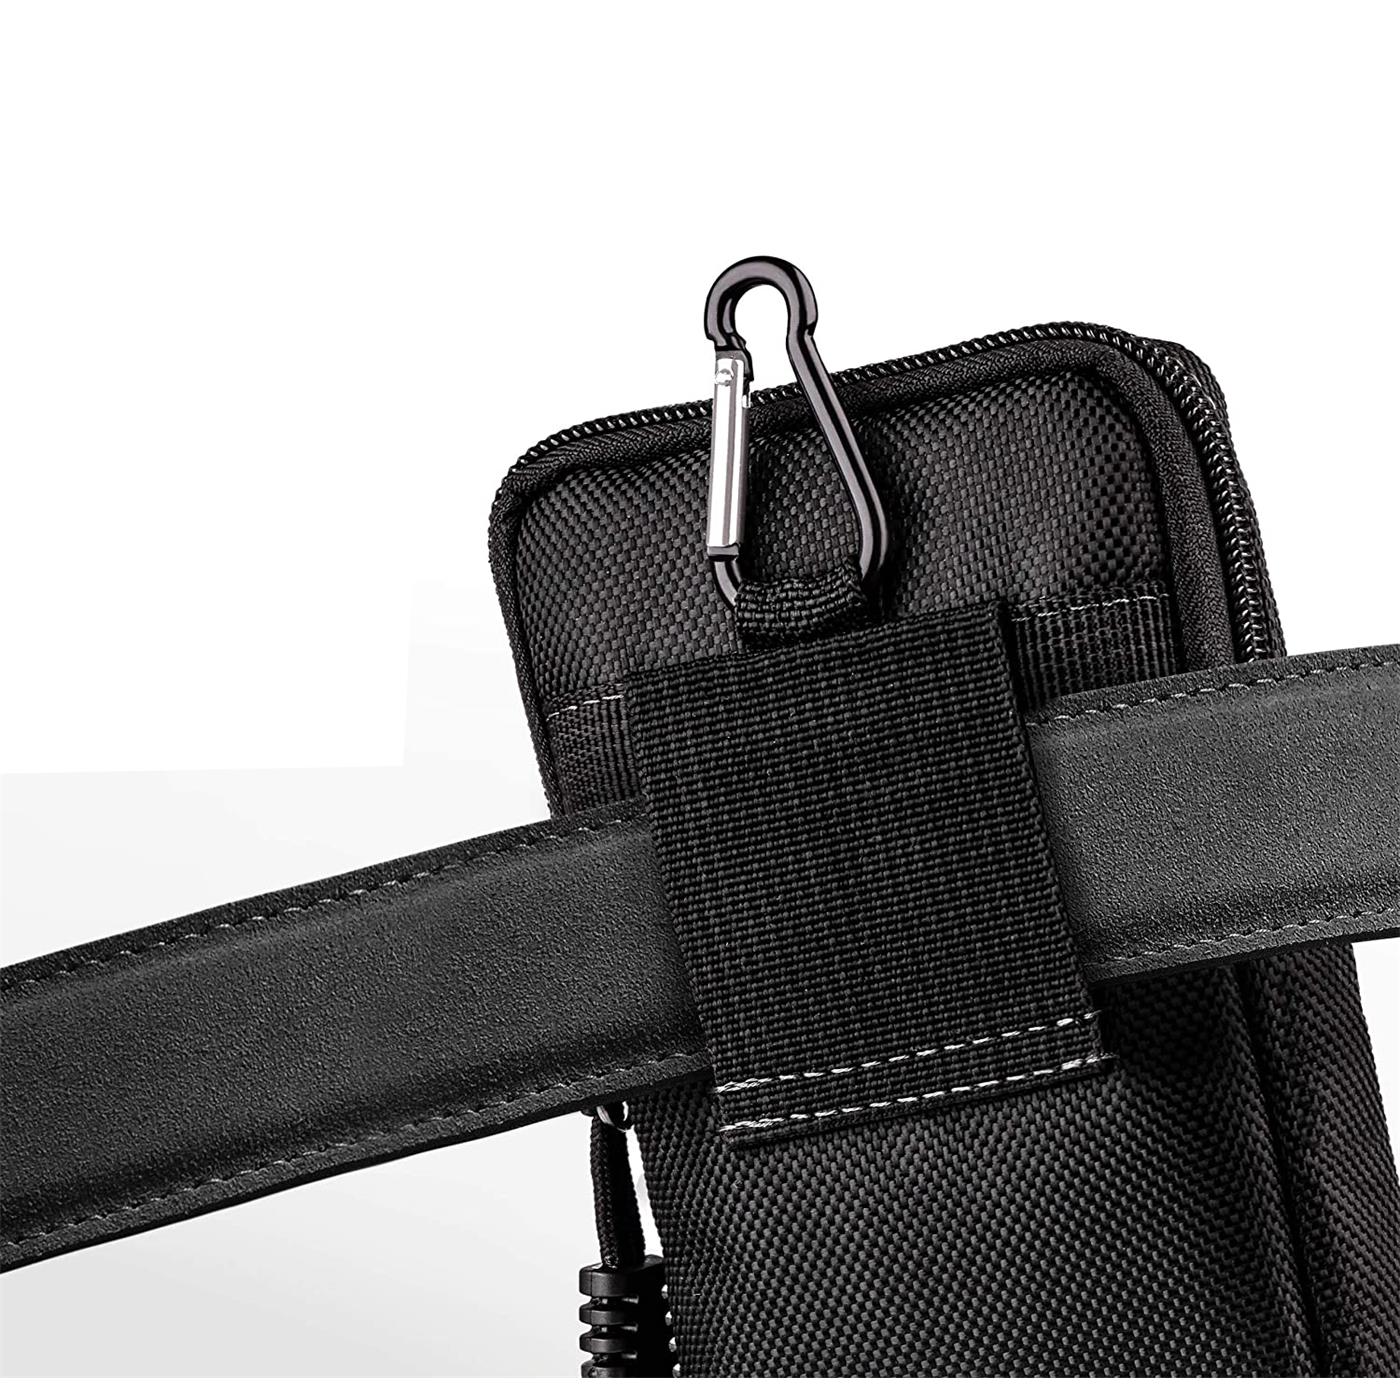 Indexbild 8 - Gürtel Tasche Für Samsung Galaxy Handy Hülle Schutzhülle Case Clip Etui Nylon